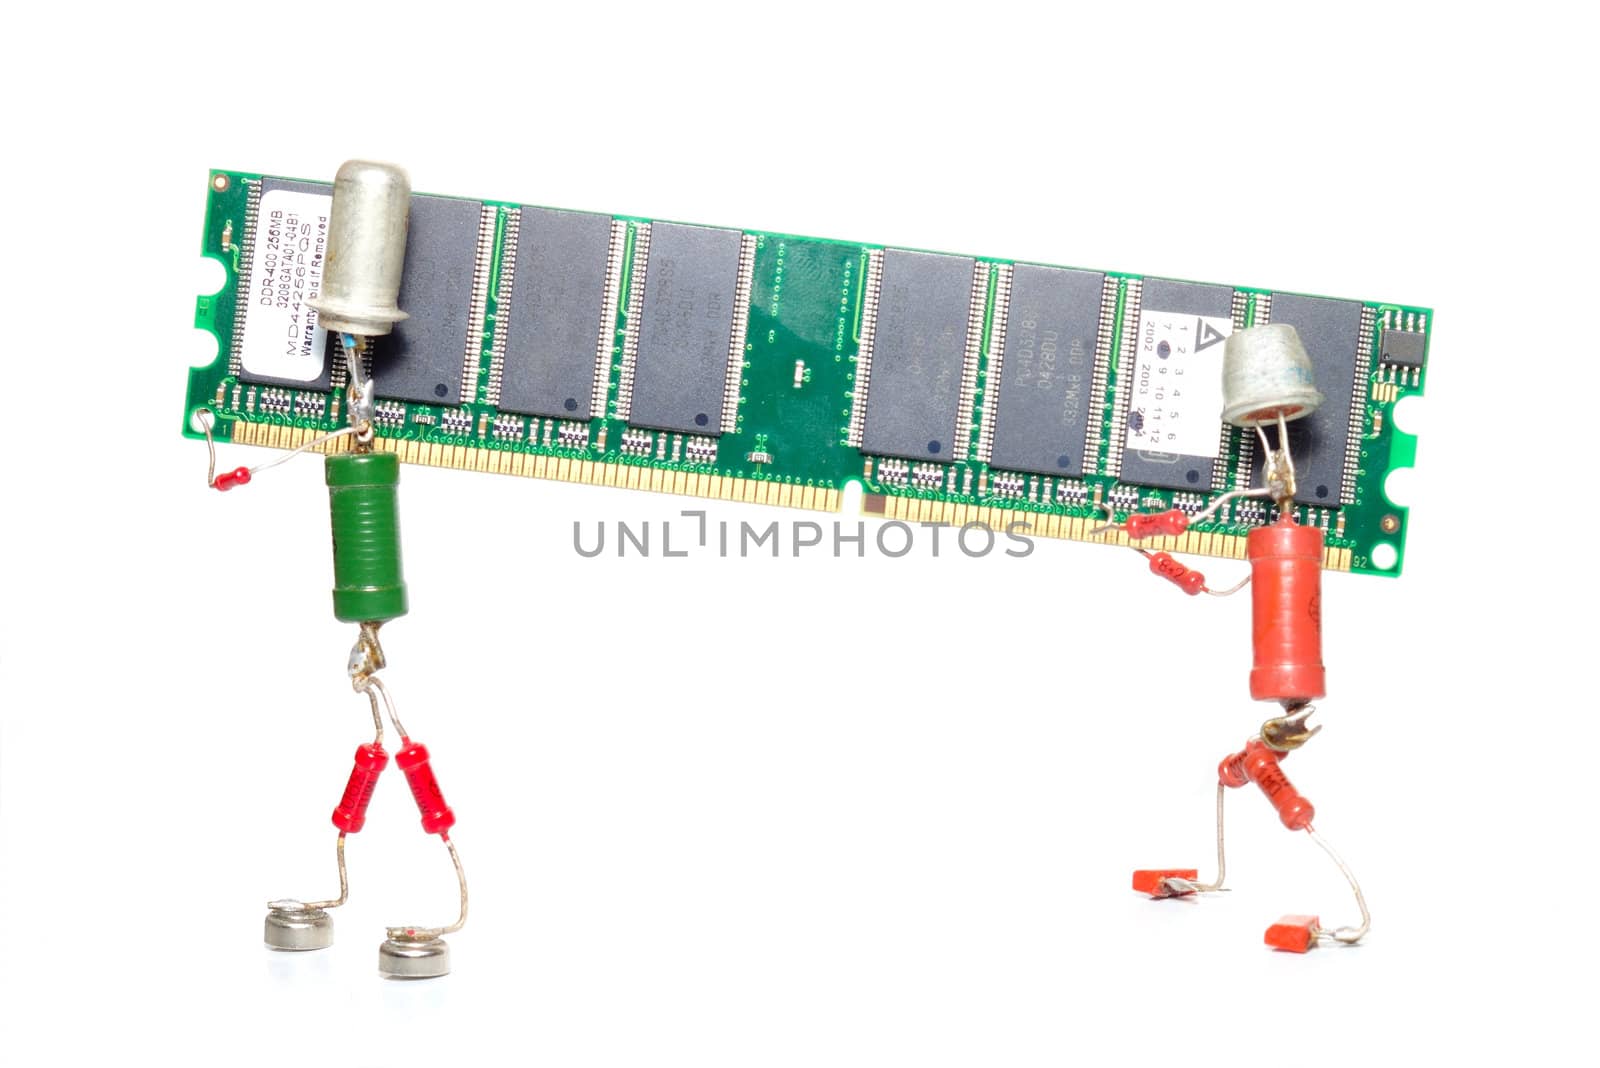 DDR memory repair or upgrade